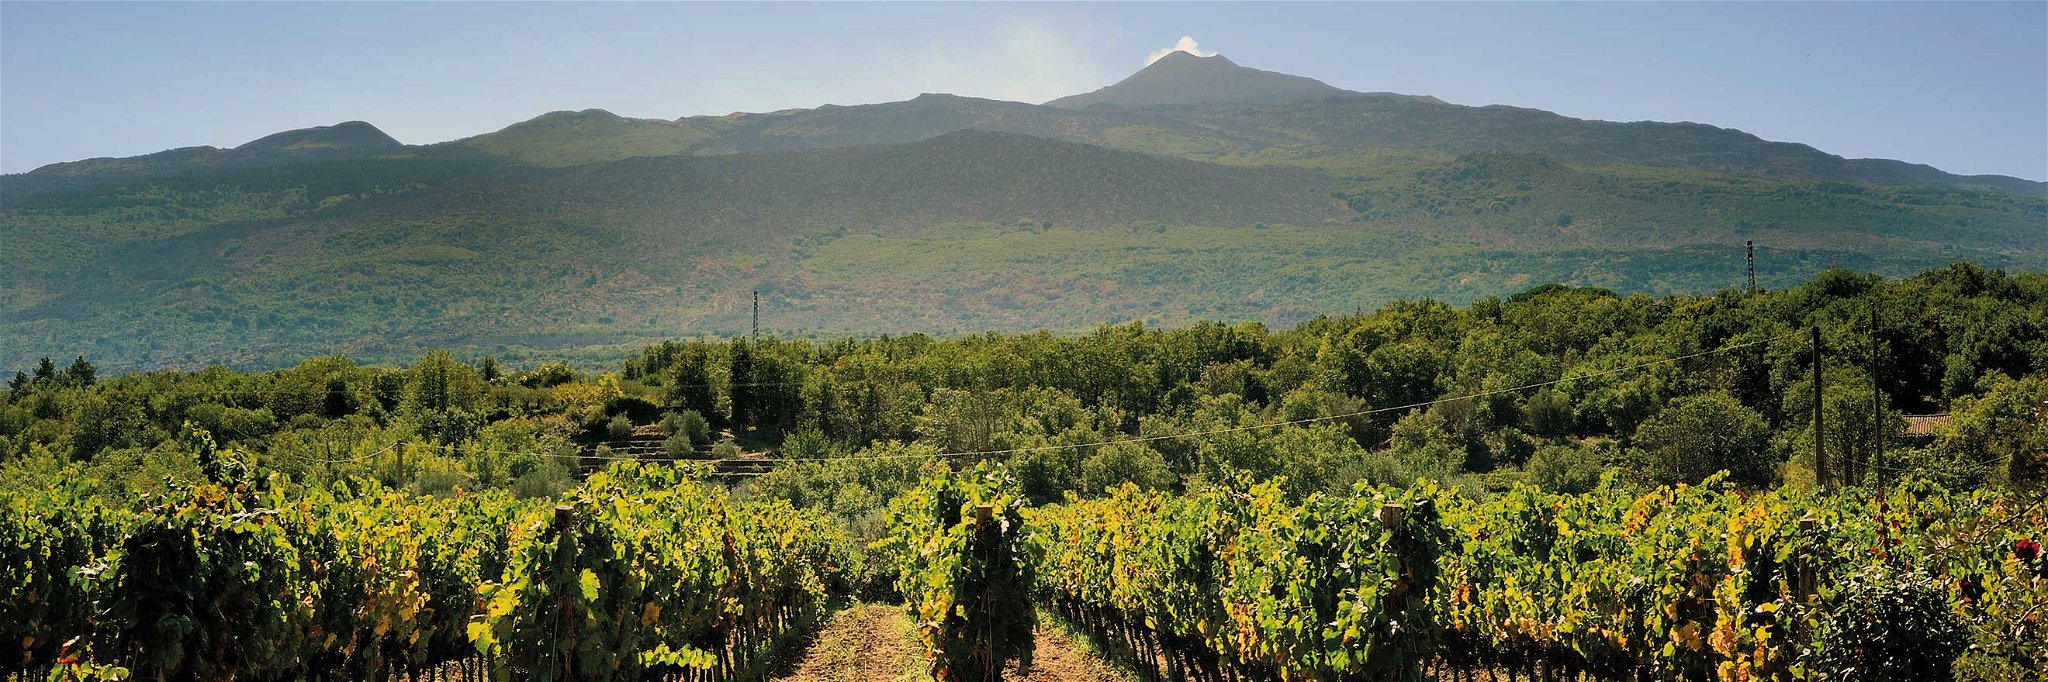 Blick über die Ostküste Siziliens bis zum Ätna: Hier entstehen heraus­ragende Weine einer neuen Winzerszene.